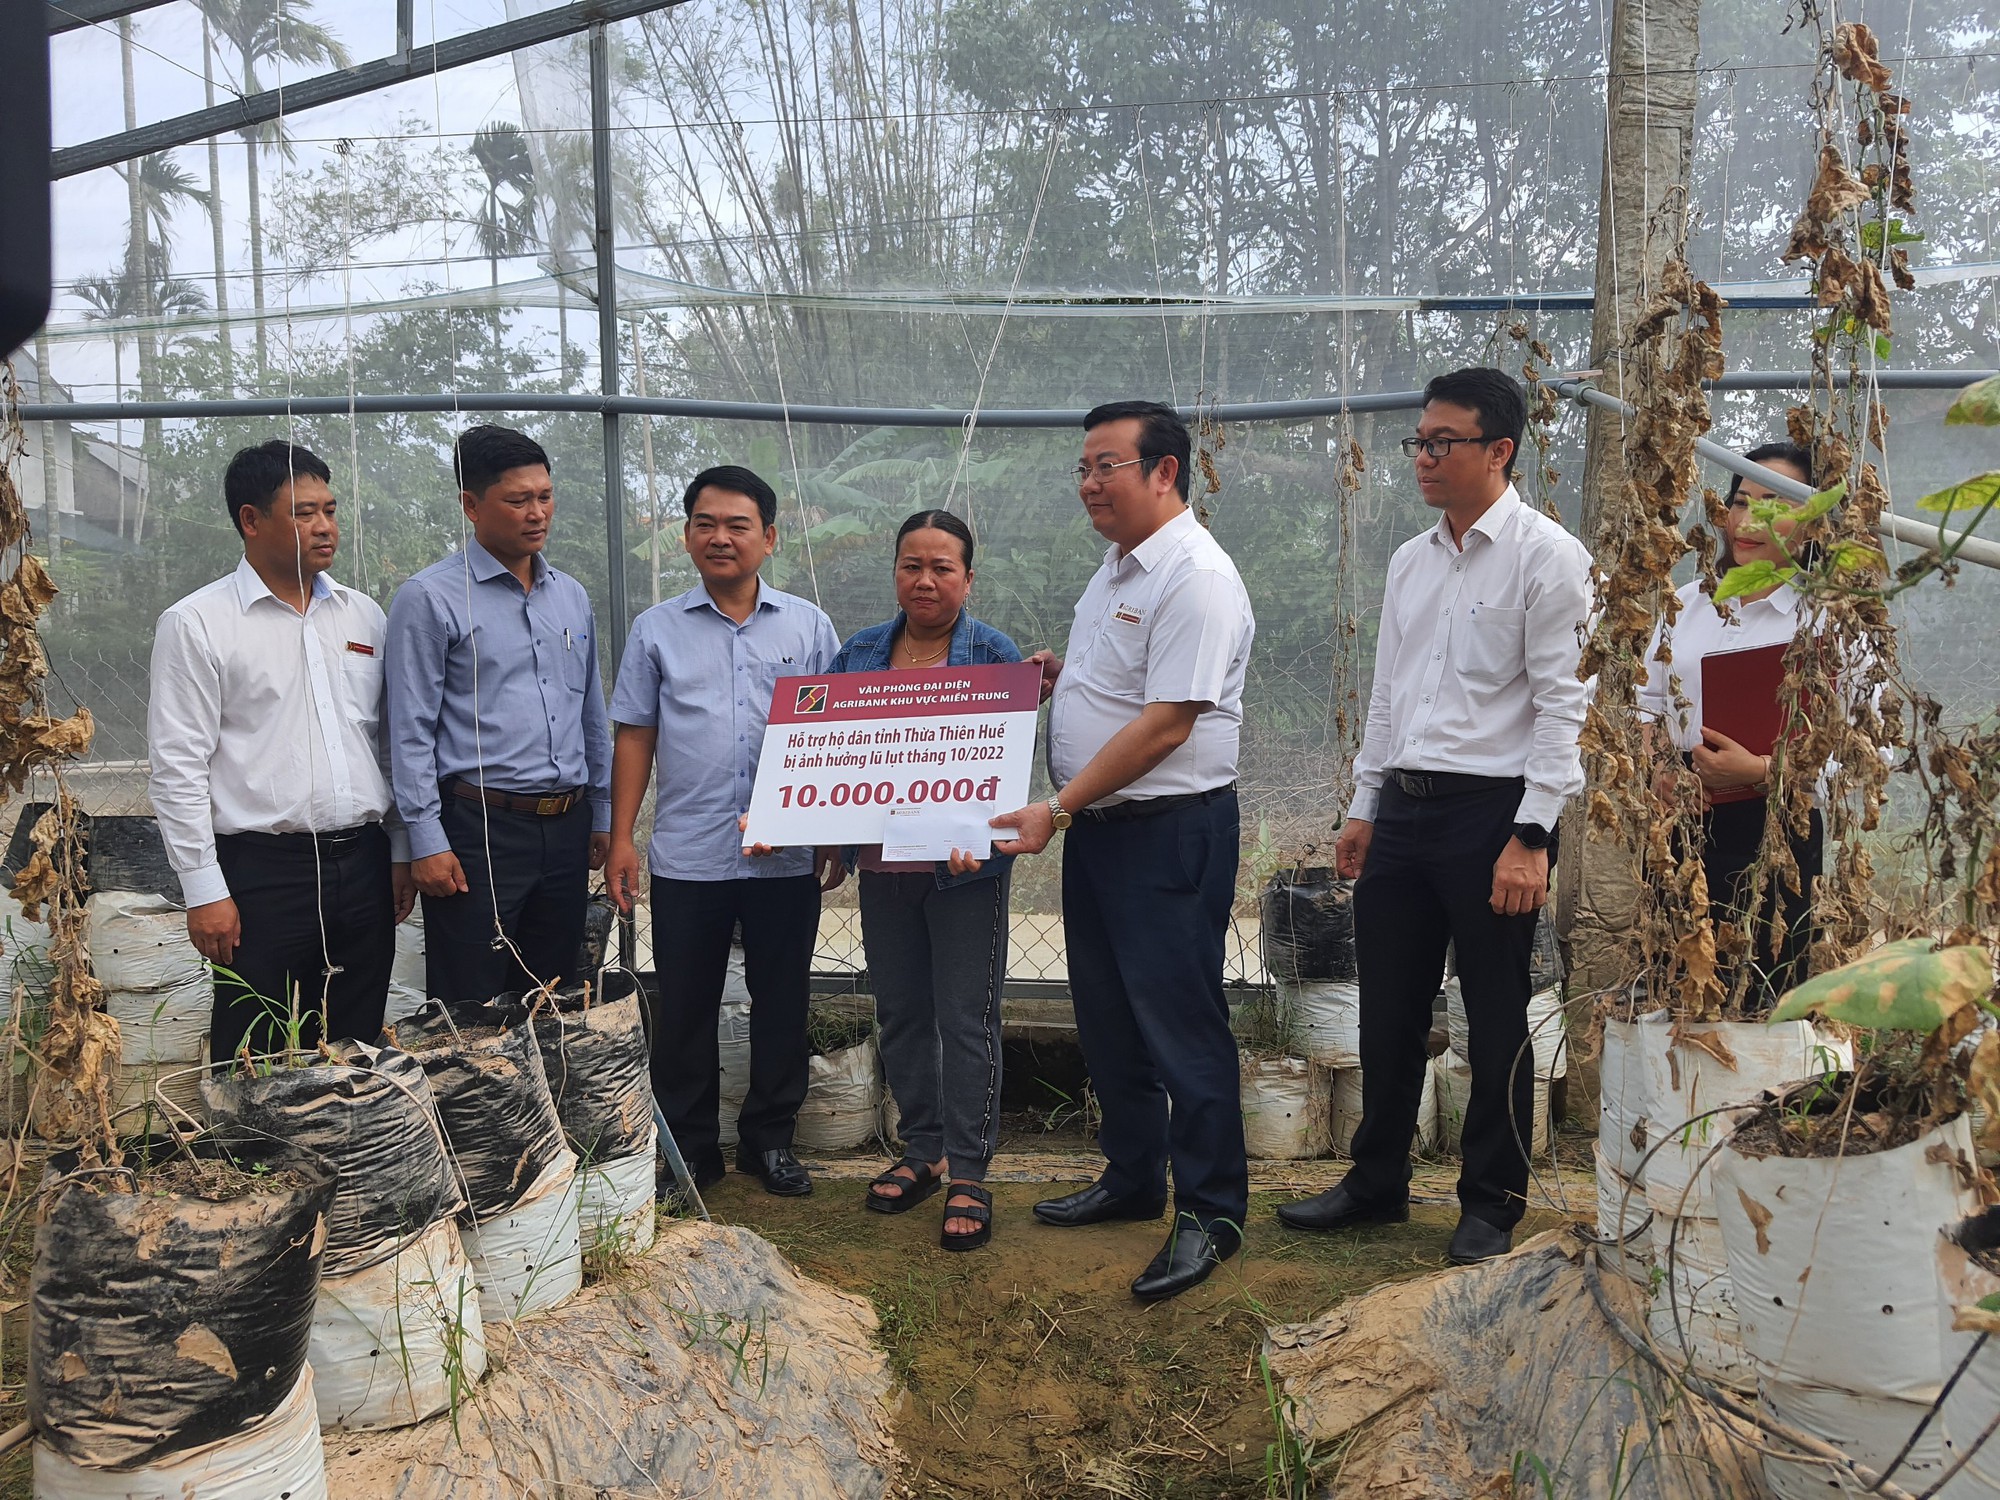 Đà Nẵng: Agribank miền Trung hỗ trợ kinh phí sửa chữa nhà ở cho các gia đình khó khăn bị thiệt hại do mưa lũ - Ảnh 3.